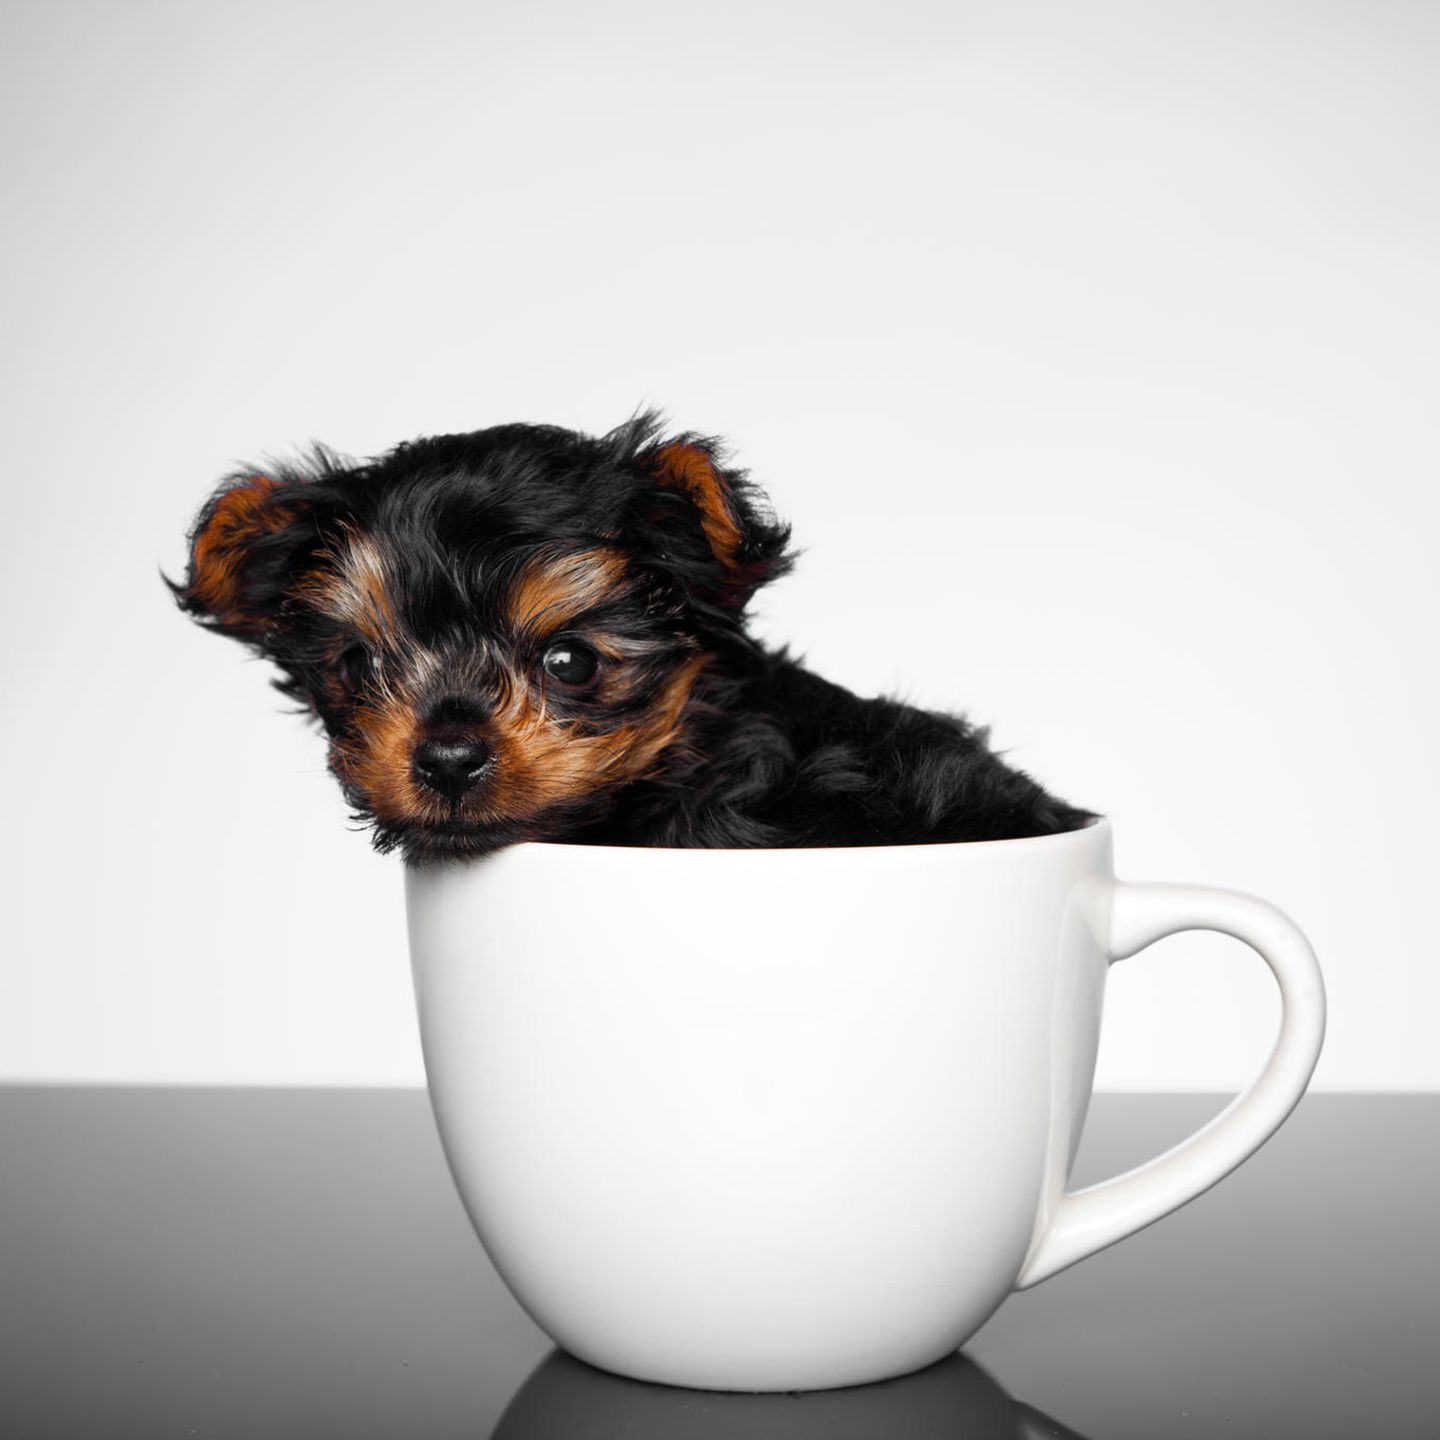 Dogs cup. Порода Teacup. Teacup собака. Чихуахуа Teacup. Щенок в кружке.